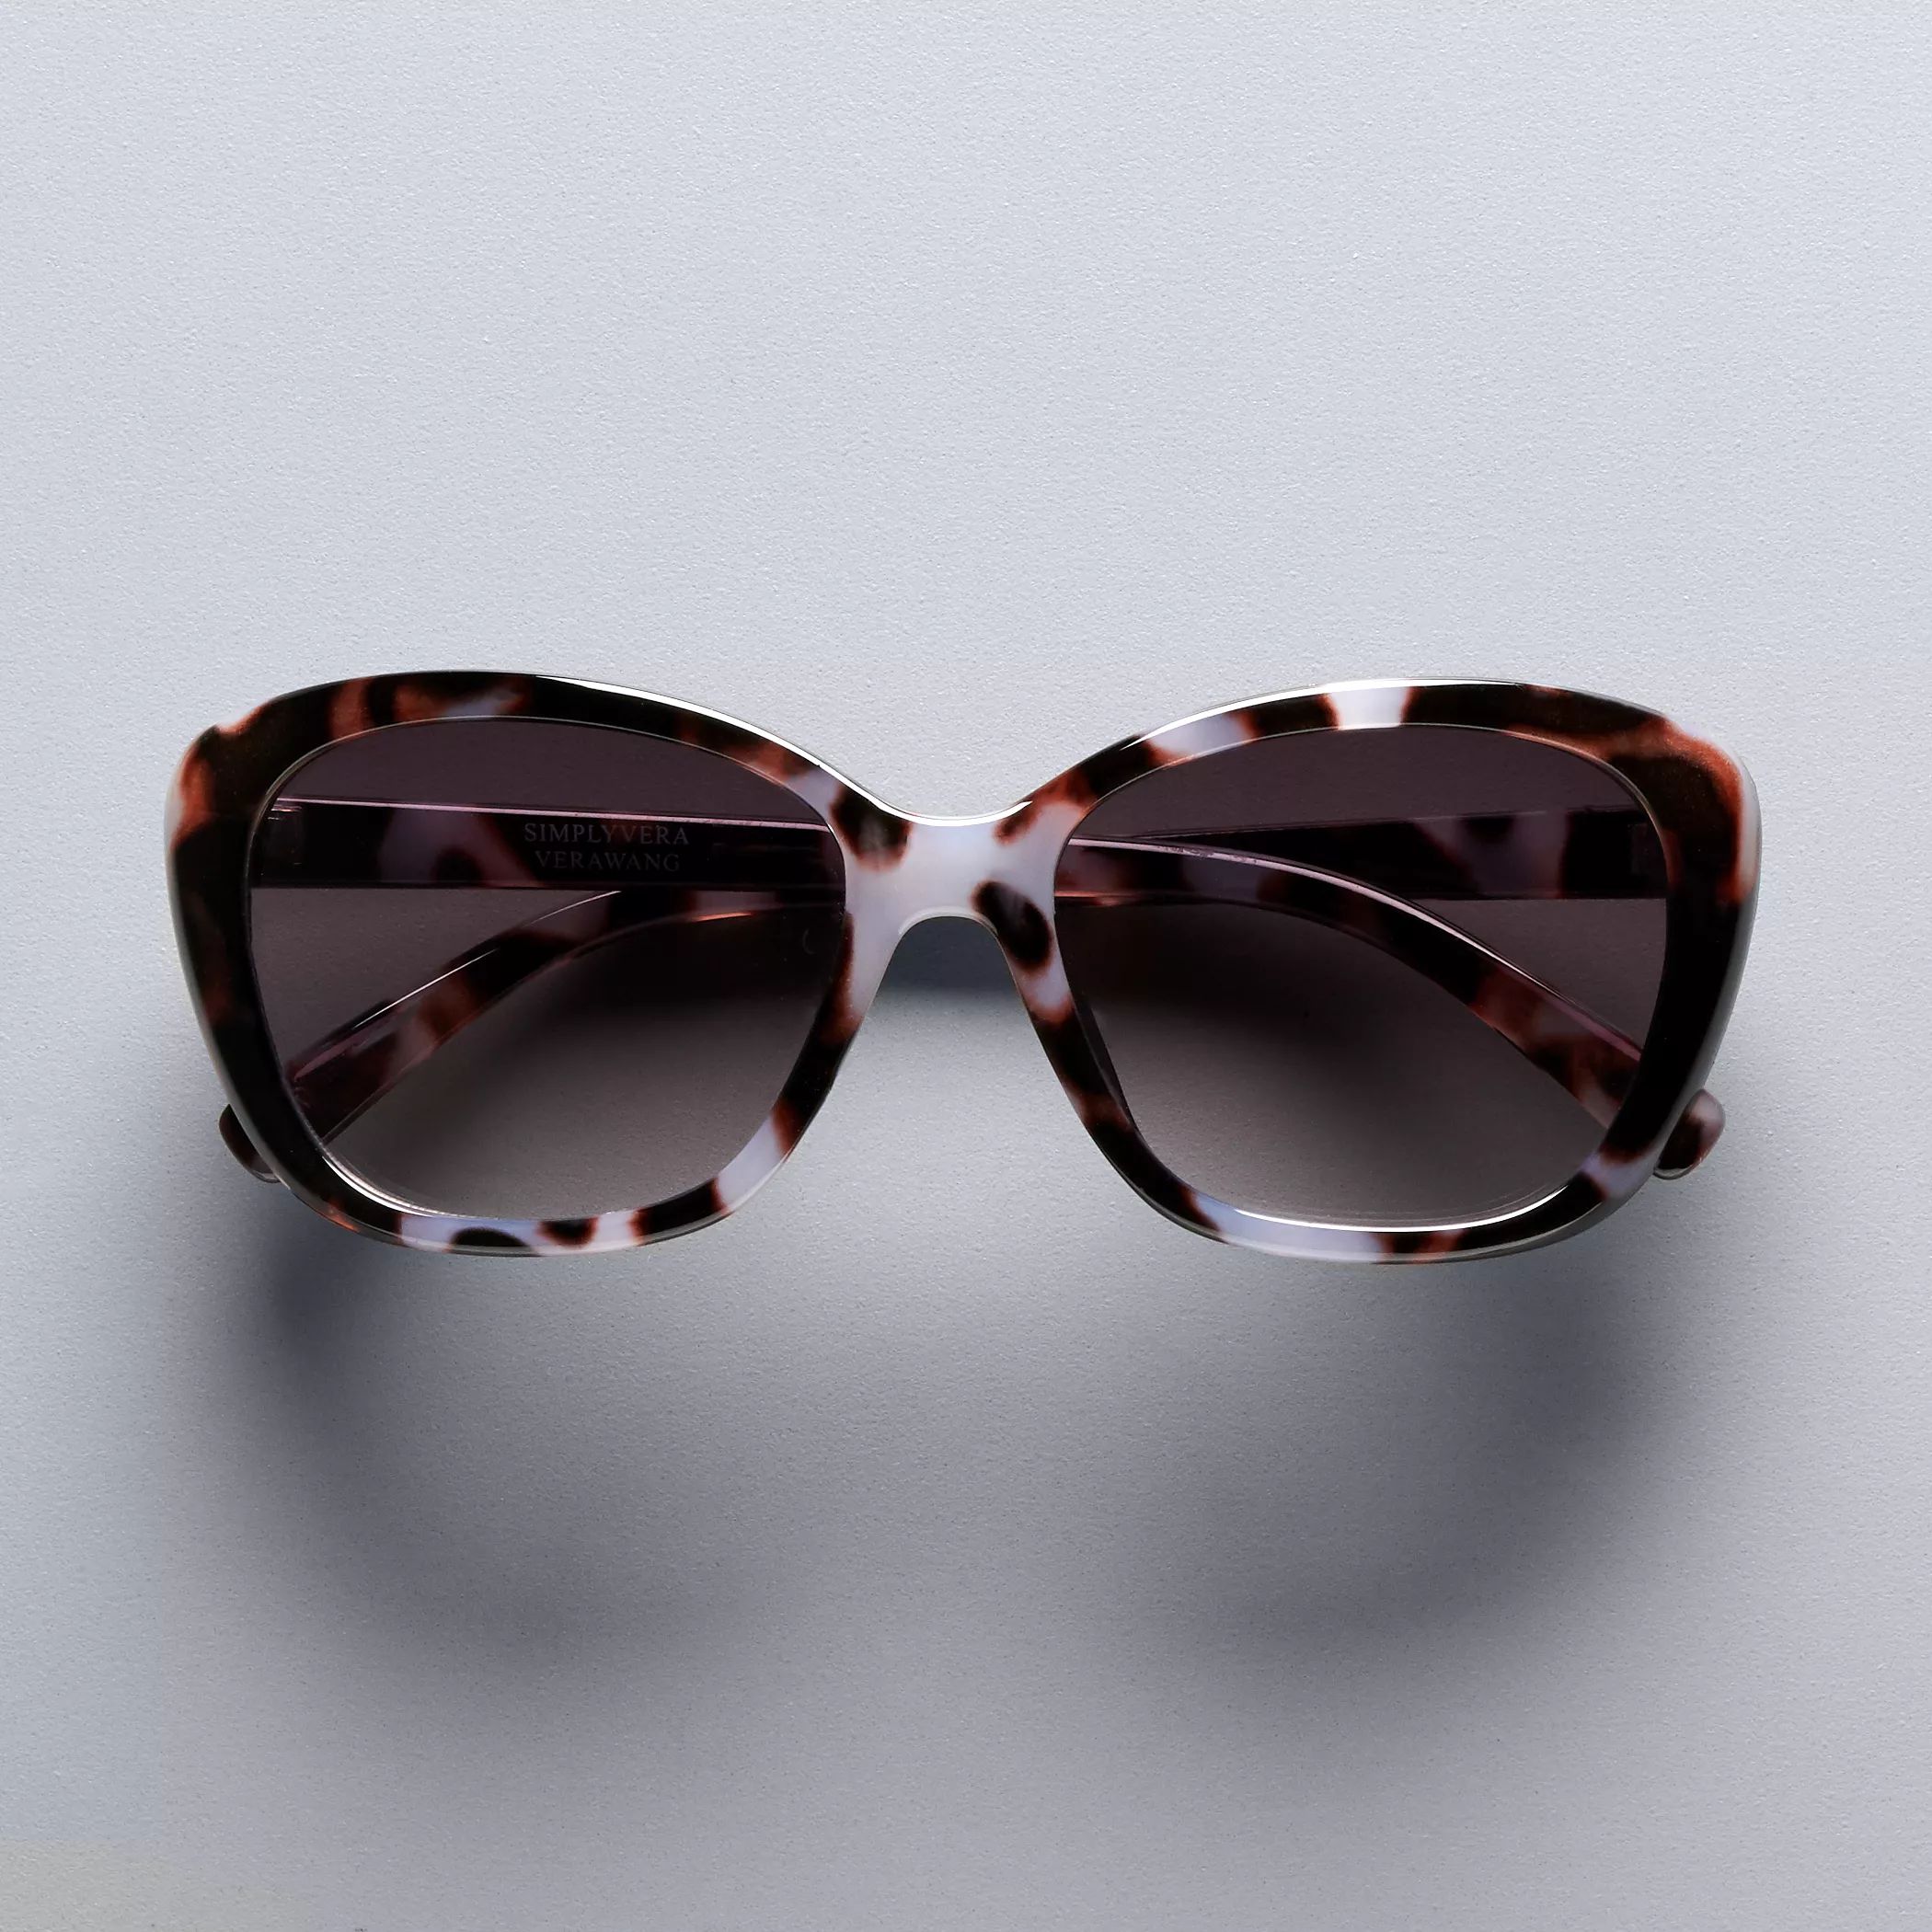 Женские солнцезащитные очки «кошачий глаз» Simply Vera Vera Wang 56 мм, рубиновые цвета Simply Vera Vera Wang